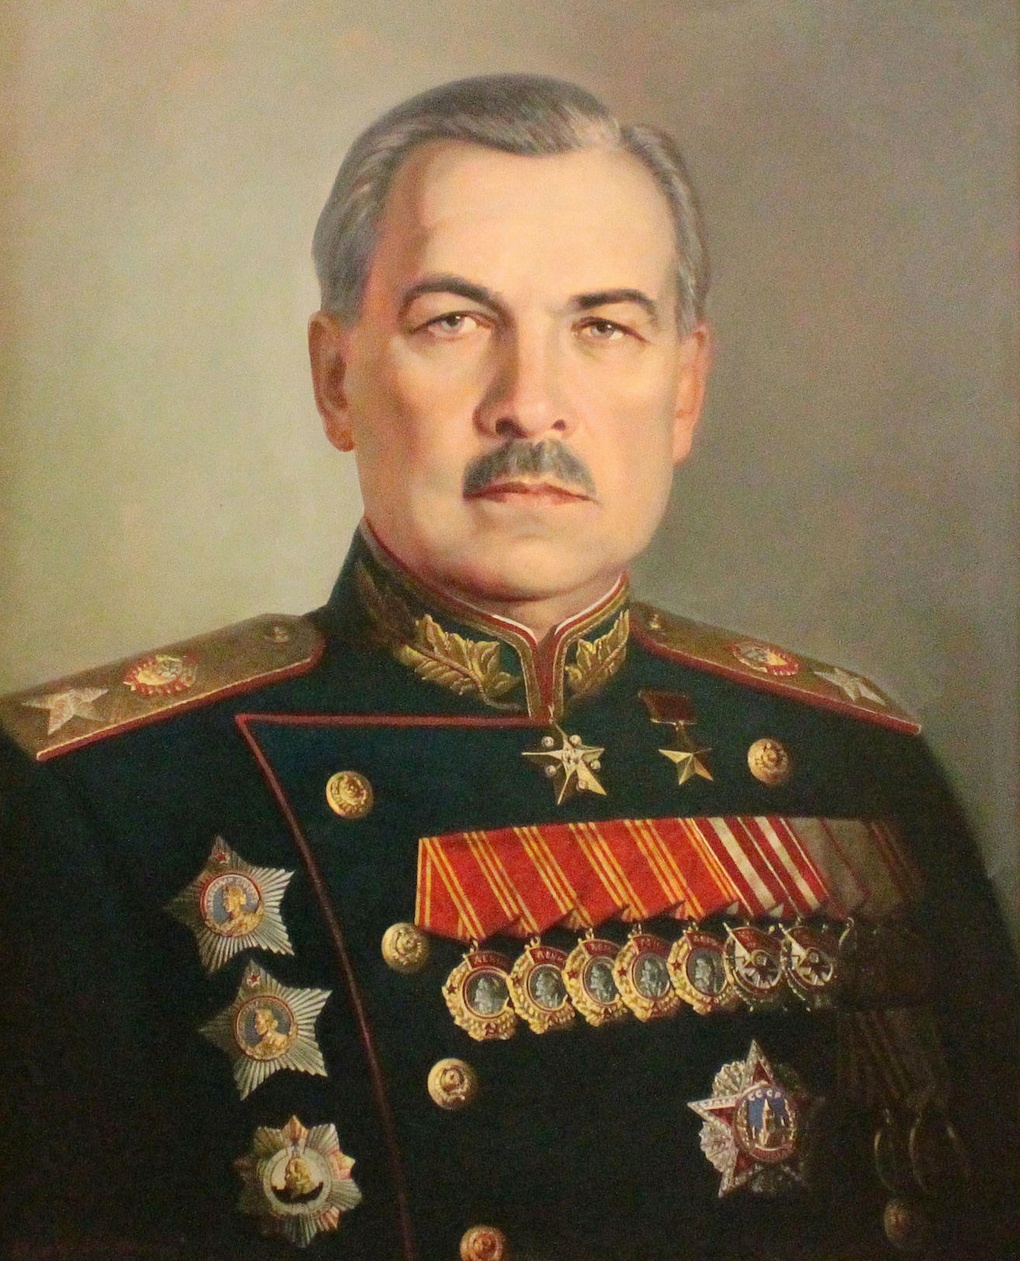 Маршал Советского Союза Леонид Говоров